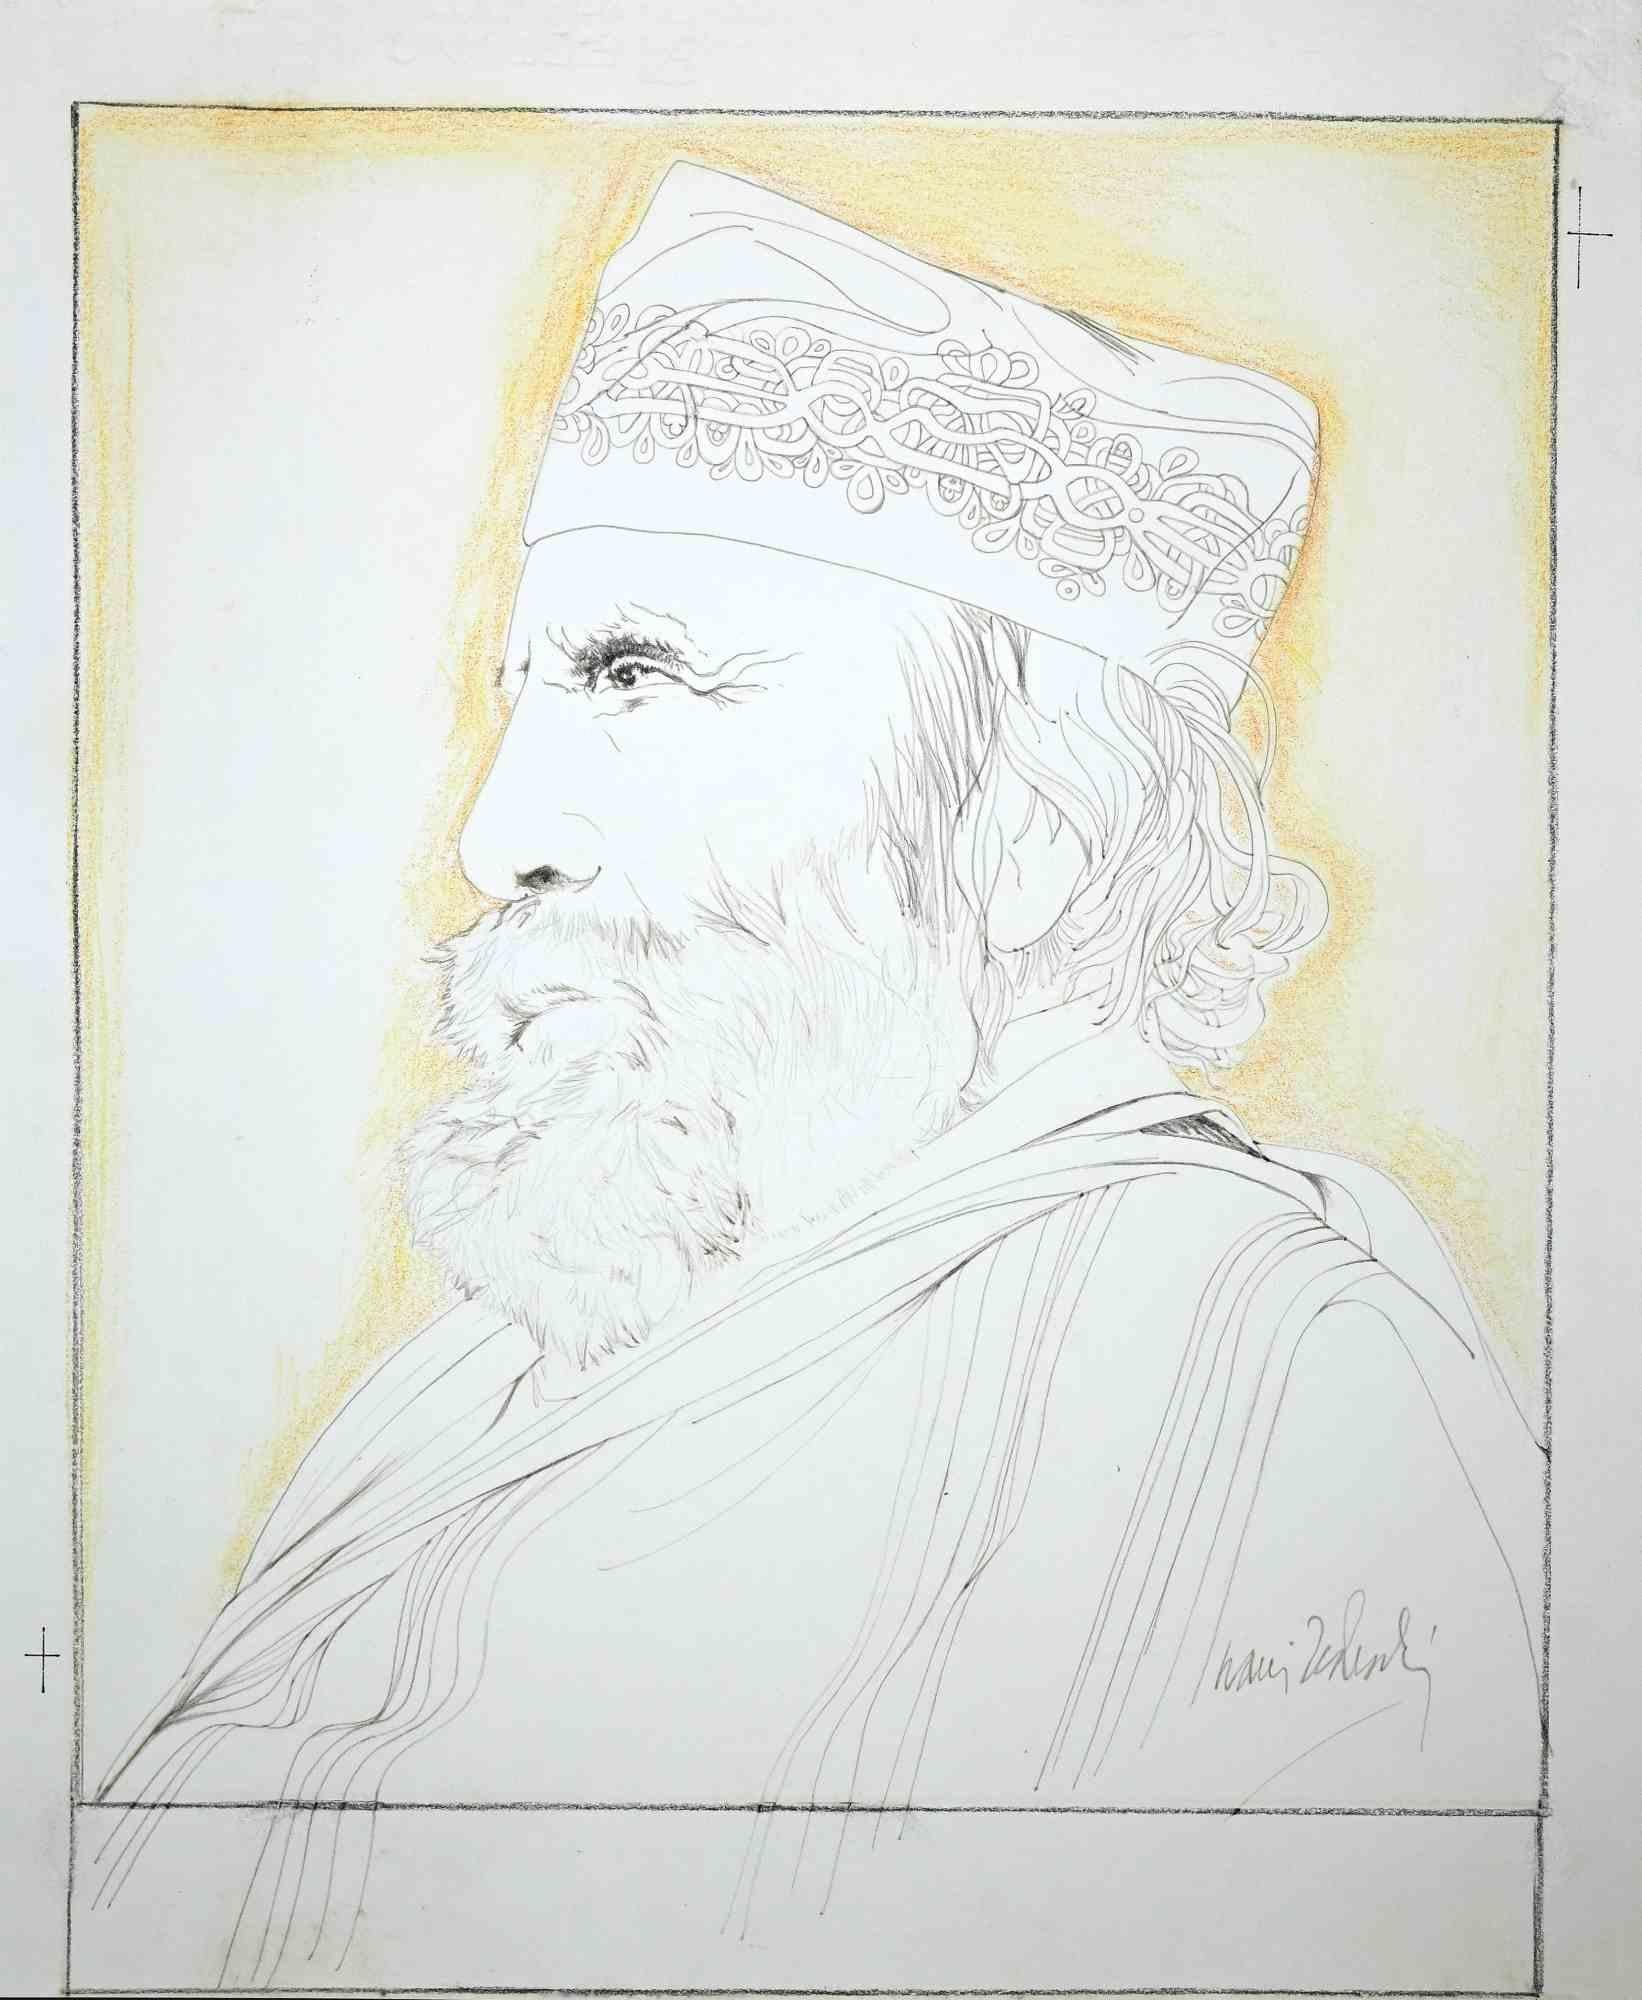 Le portrait de Giuseppe Garibaldi est une œuvre d'art originale réalisée par Nani Tedeschi dans les années 1970.

Beau dessin au crayon de couleur et au pastel sur carton.

Bonnes conditions.

Signature illisible dans la marge inférieure droite.